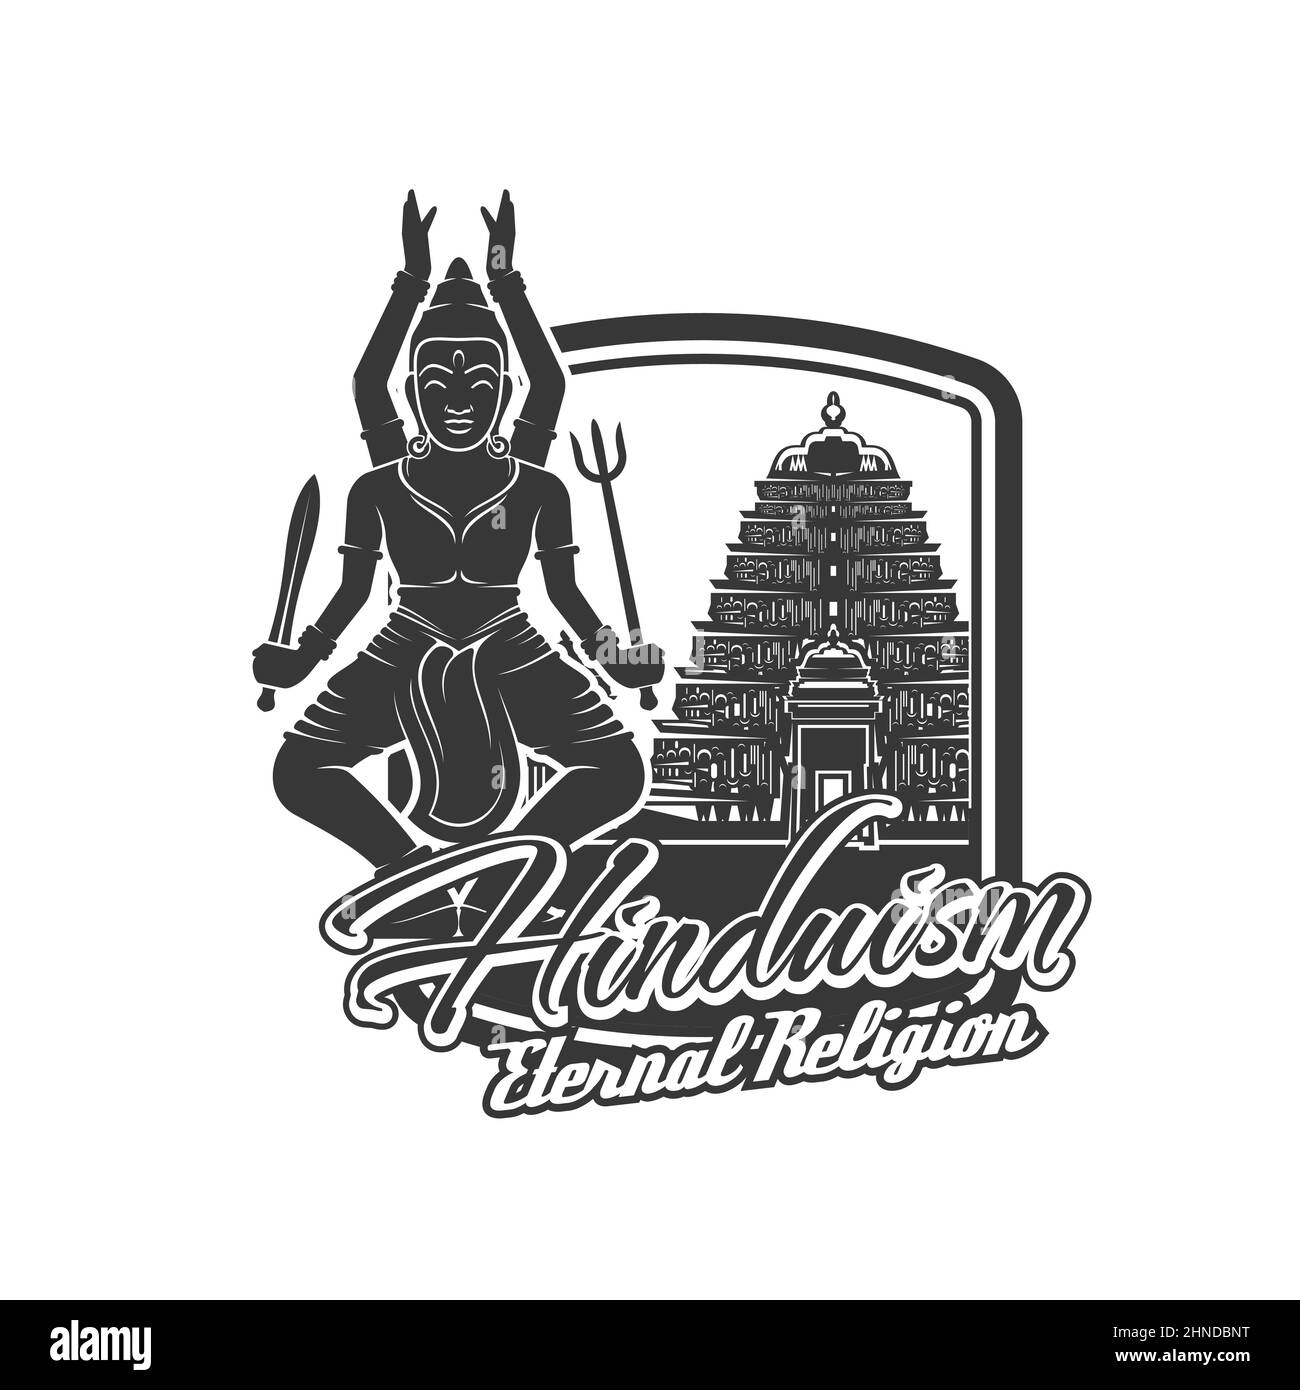 Hinduismus Religion Vektor-Symbol. Indischer Gott Herr Shiva mit trishul, Schwert und alten hindu-Tempel. Hinduismus Gottheit der Meditation, Yoga, Zeit und Tanz, Stock Vektor